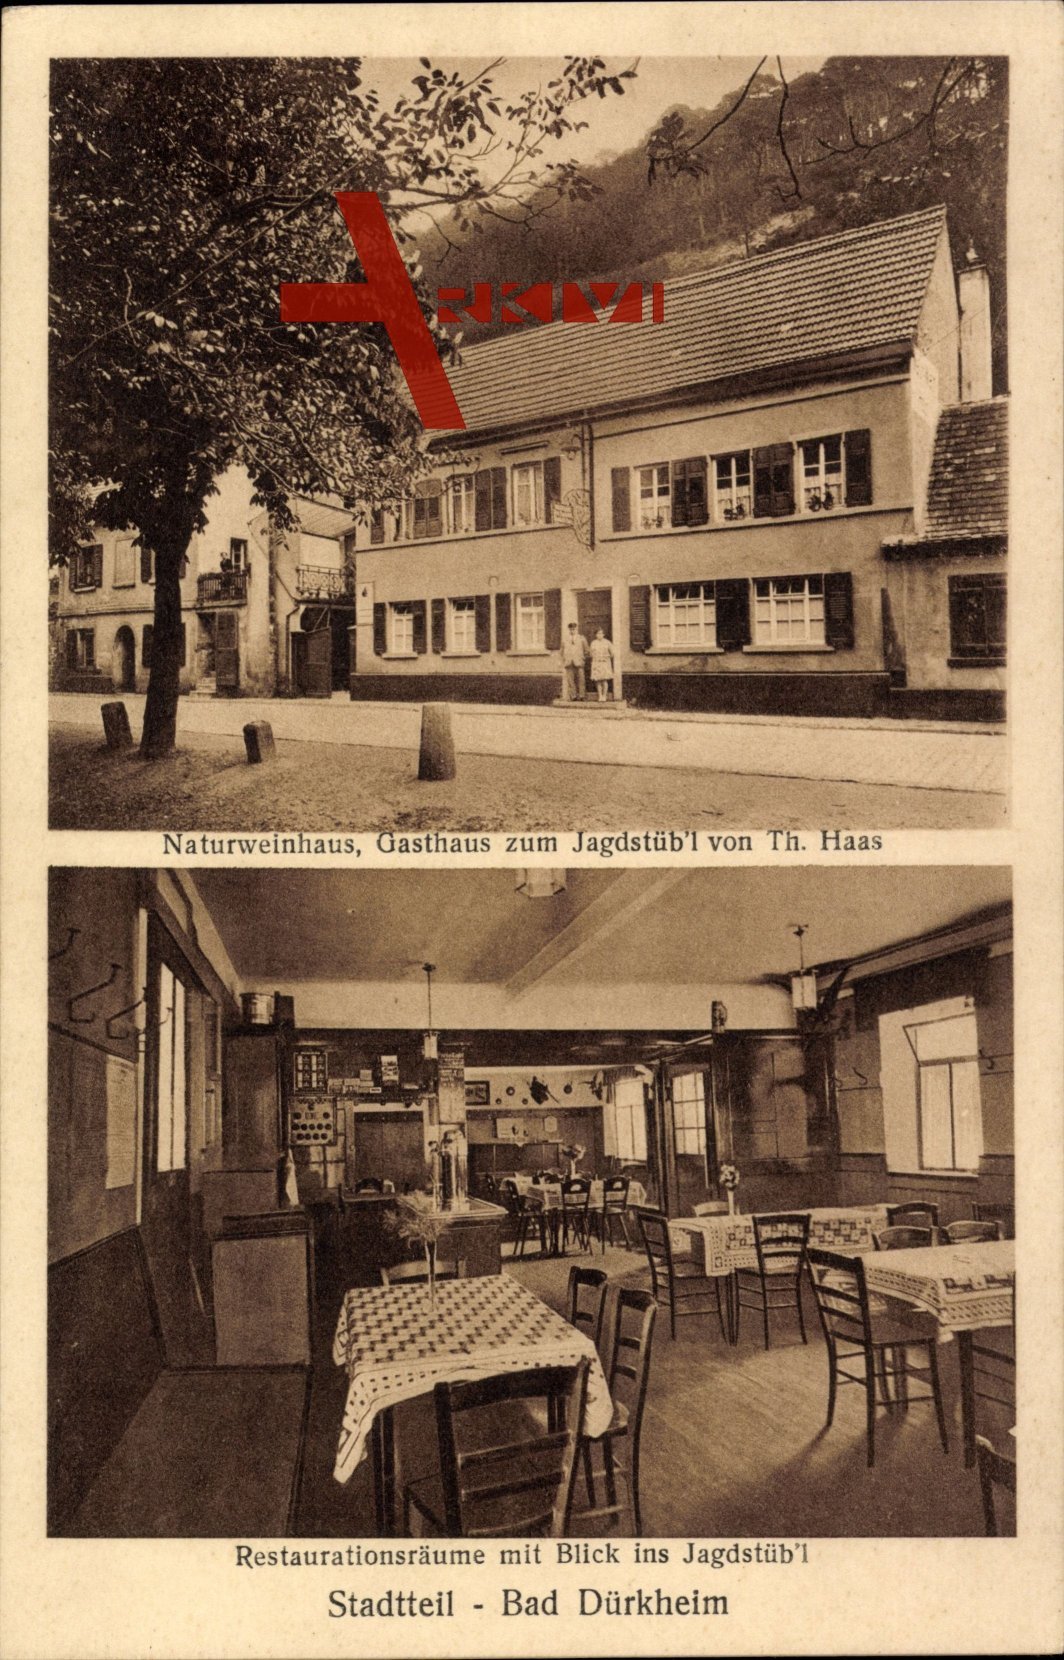 Bad Dürkheim, Naturweinhaus zum Jagdstübl von Th. Haas, Restaurationsräume